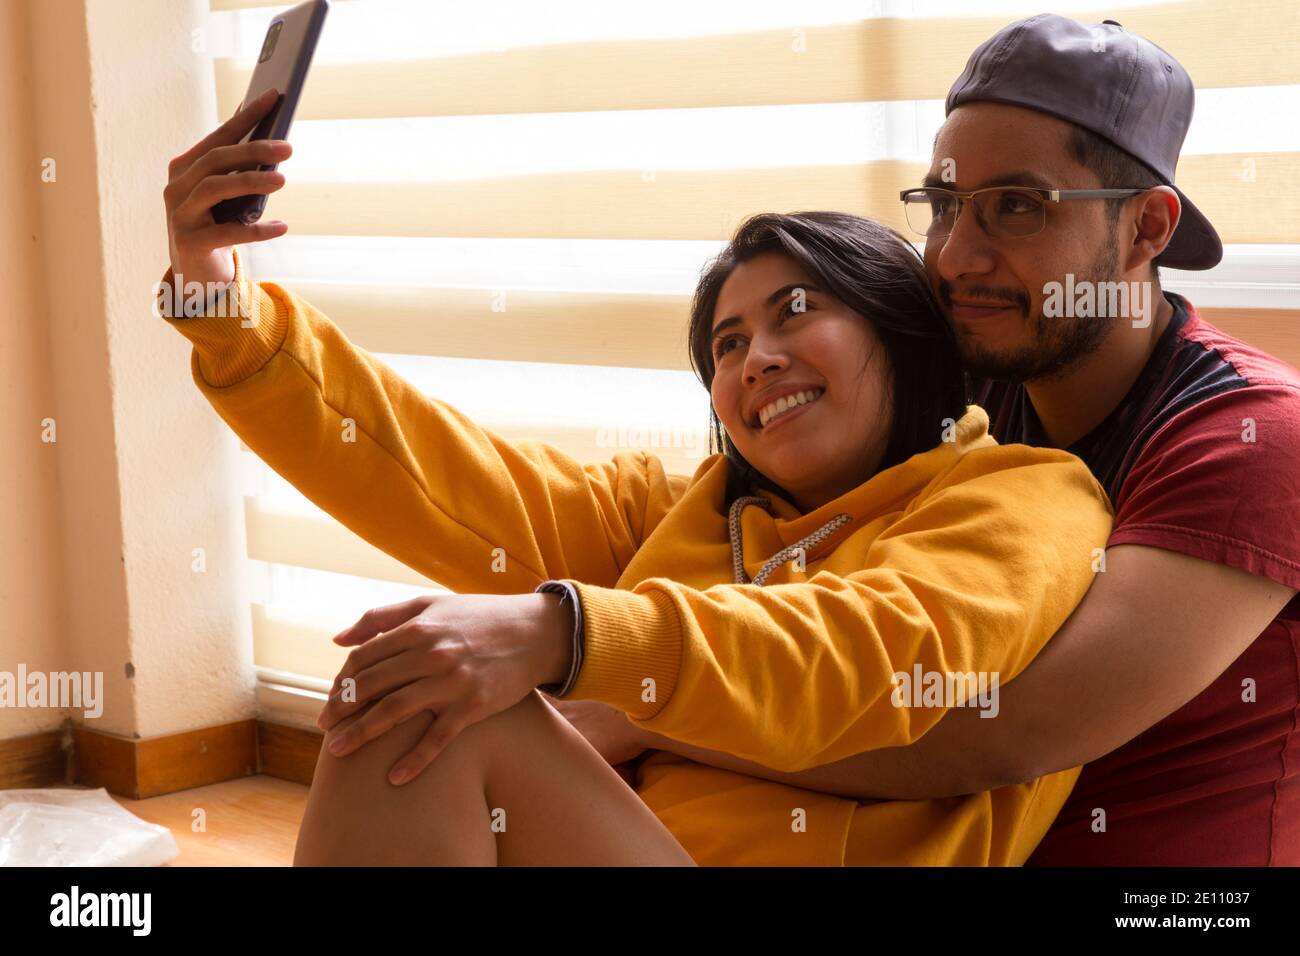 couple jouant et prenant un selfie, deux personnes avec des vêtements industriels pour peindre, mariée et marié souriant assis en face. une fenêtre Banque D'Images